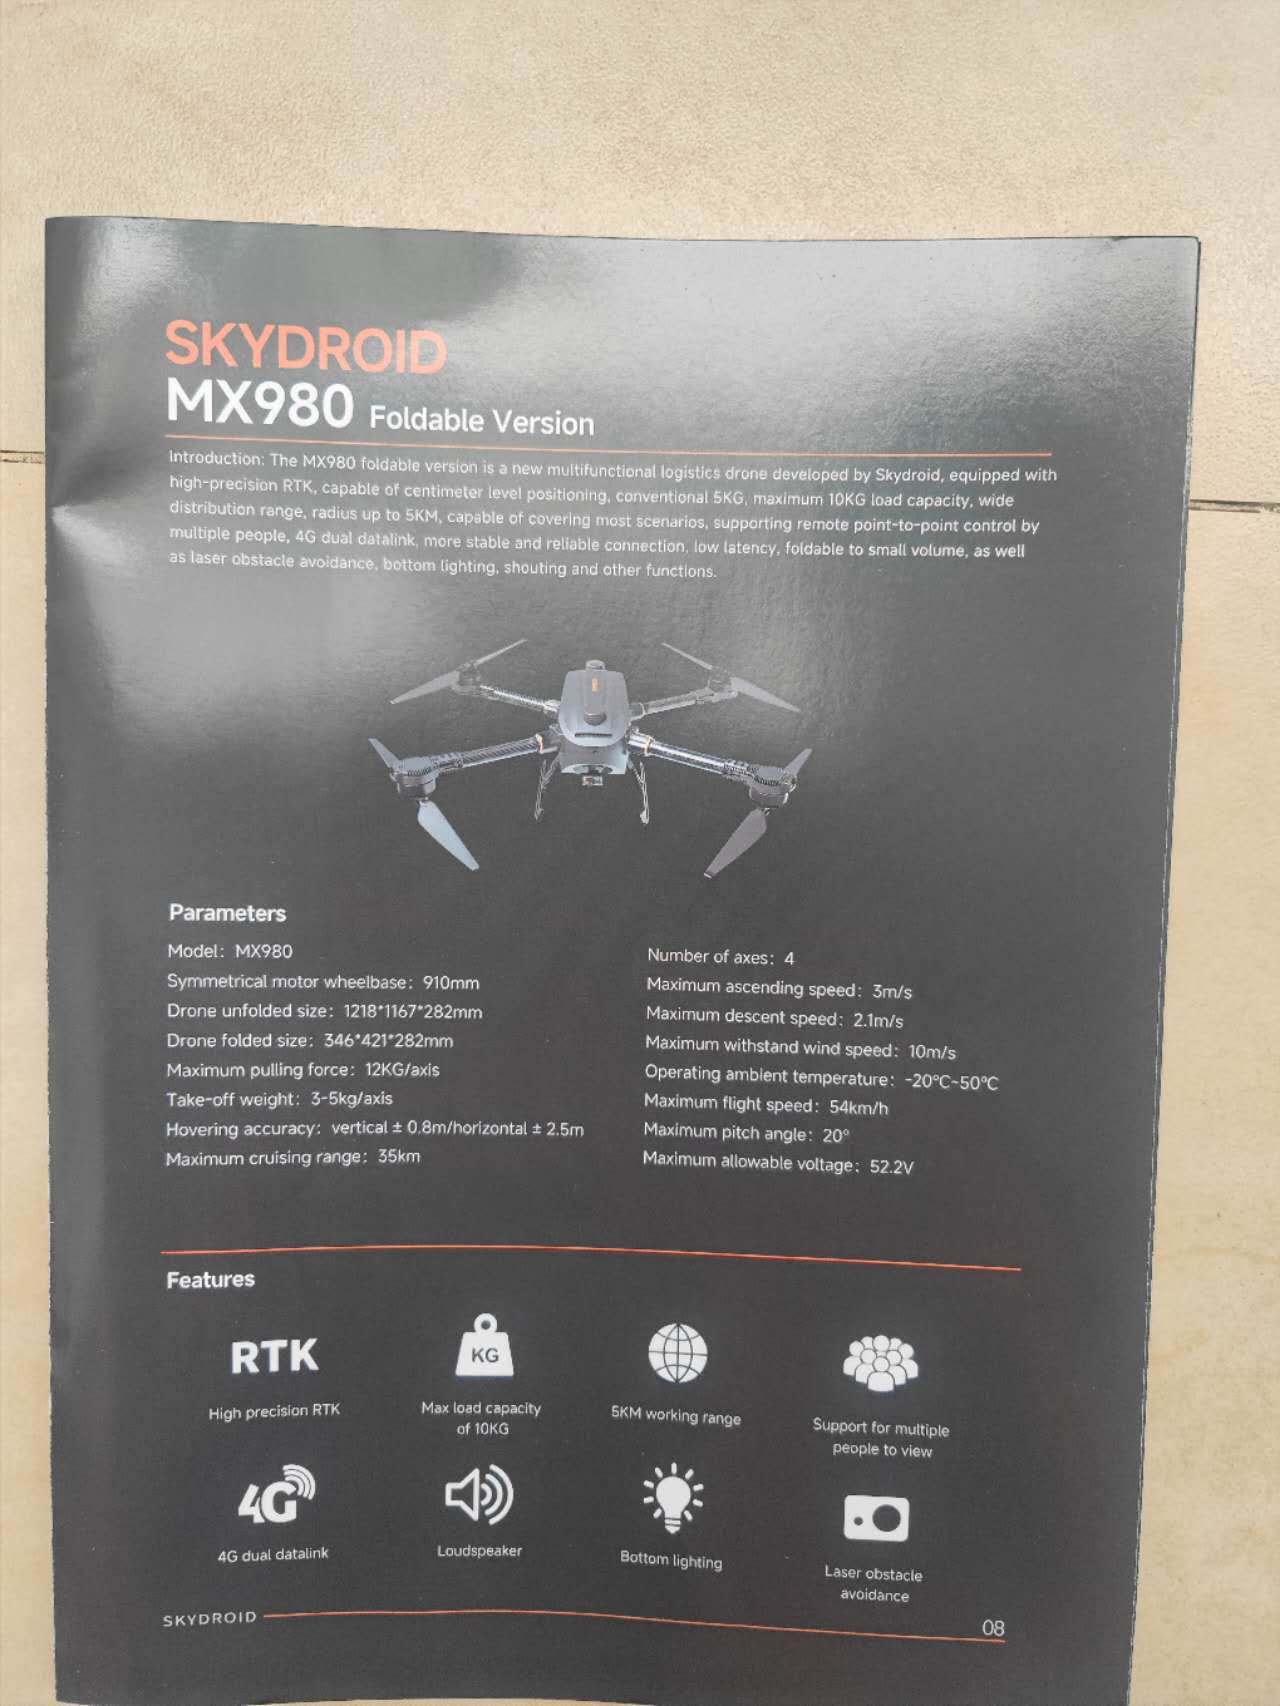 طائرة بدون طيار Skydroid MX980 - وزن إقلاع 5 كجم / 10 كجم، نطاق إبحار 35 كم / 5 كم، 4G وصلة بيانات مزدوجة RTK لتحديد المواقع بدون طيار صناعية مع مكبر صوت